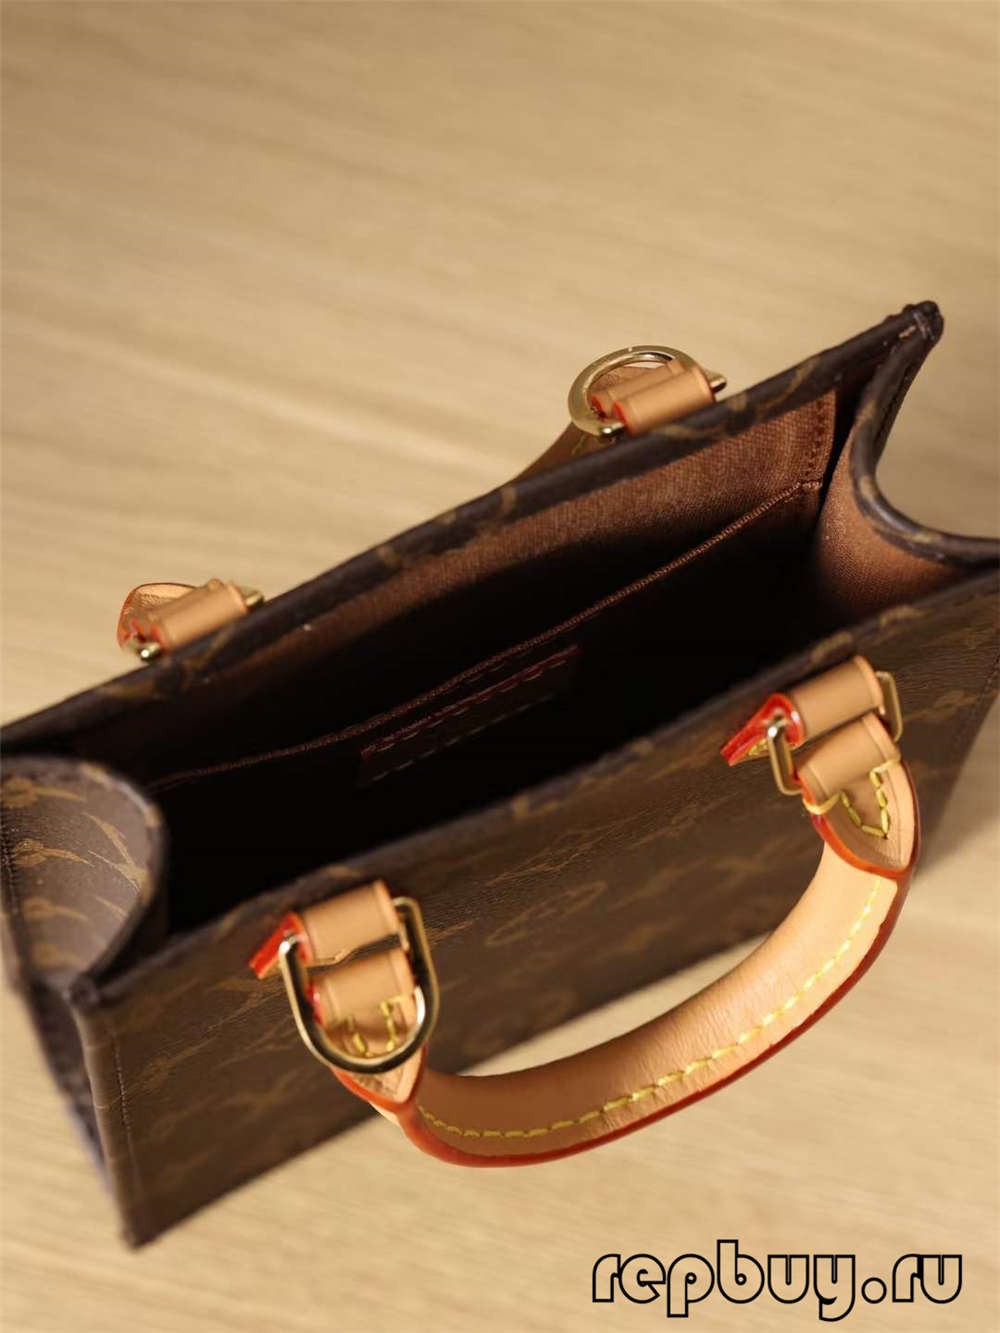 Louis Vuitton M69442 Petit Sac Plat çanta kopje me cilësi të lartë (2022 e përditësuar)-Dyqani në internet i çanta Louis Vuitton Fake me cilësi më të mirë, kopje e çantës së stilistit ru